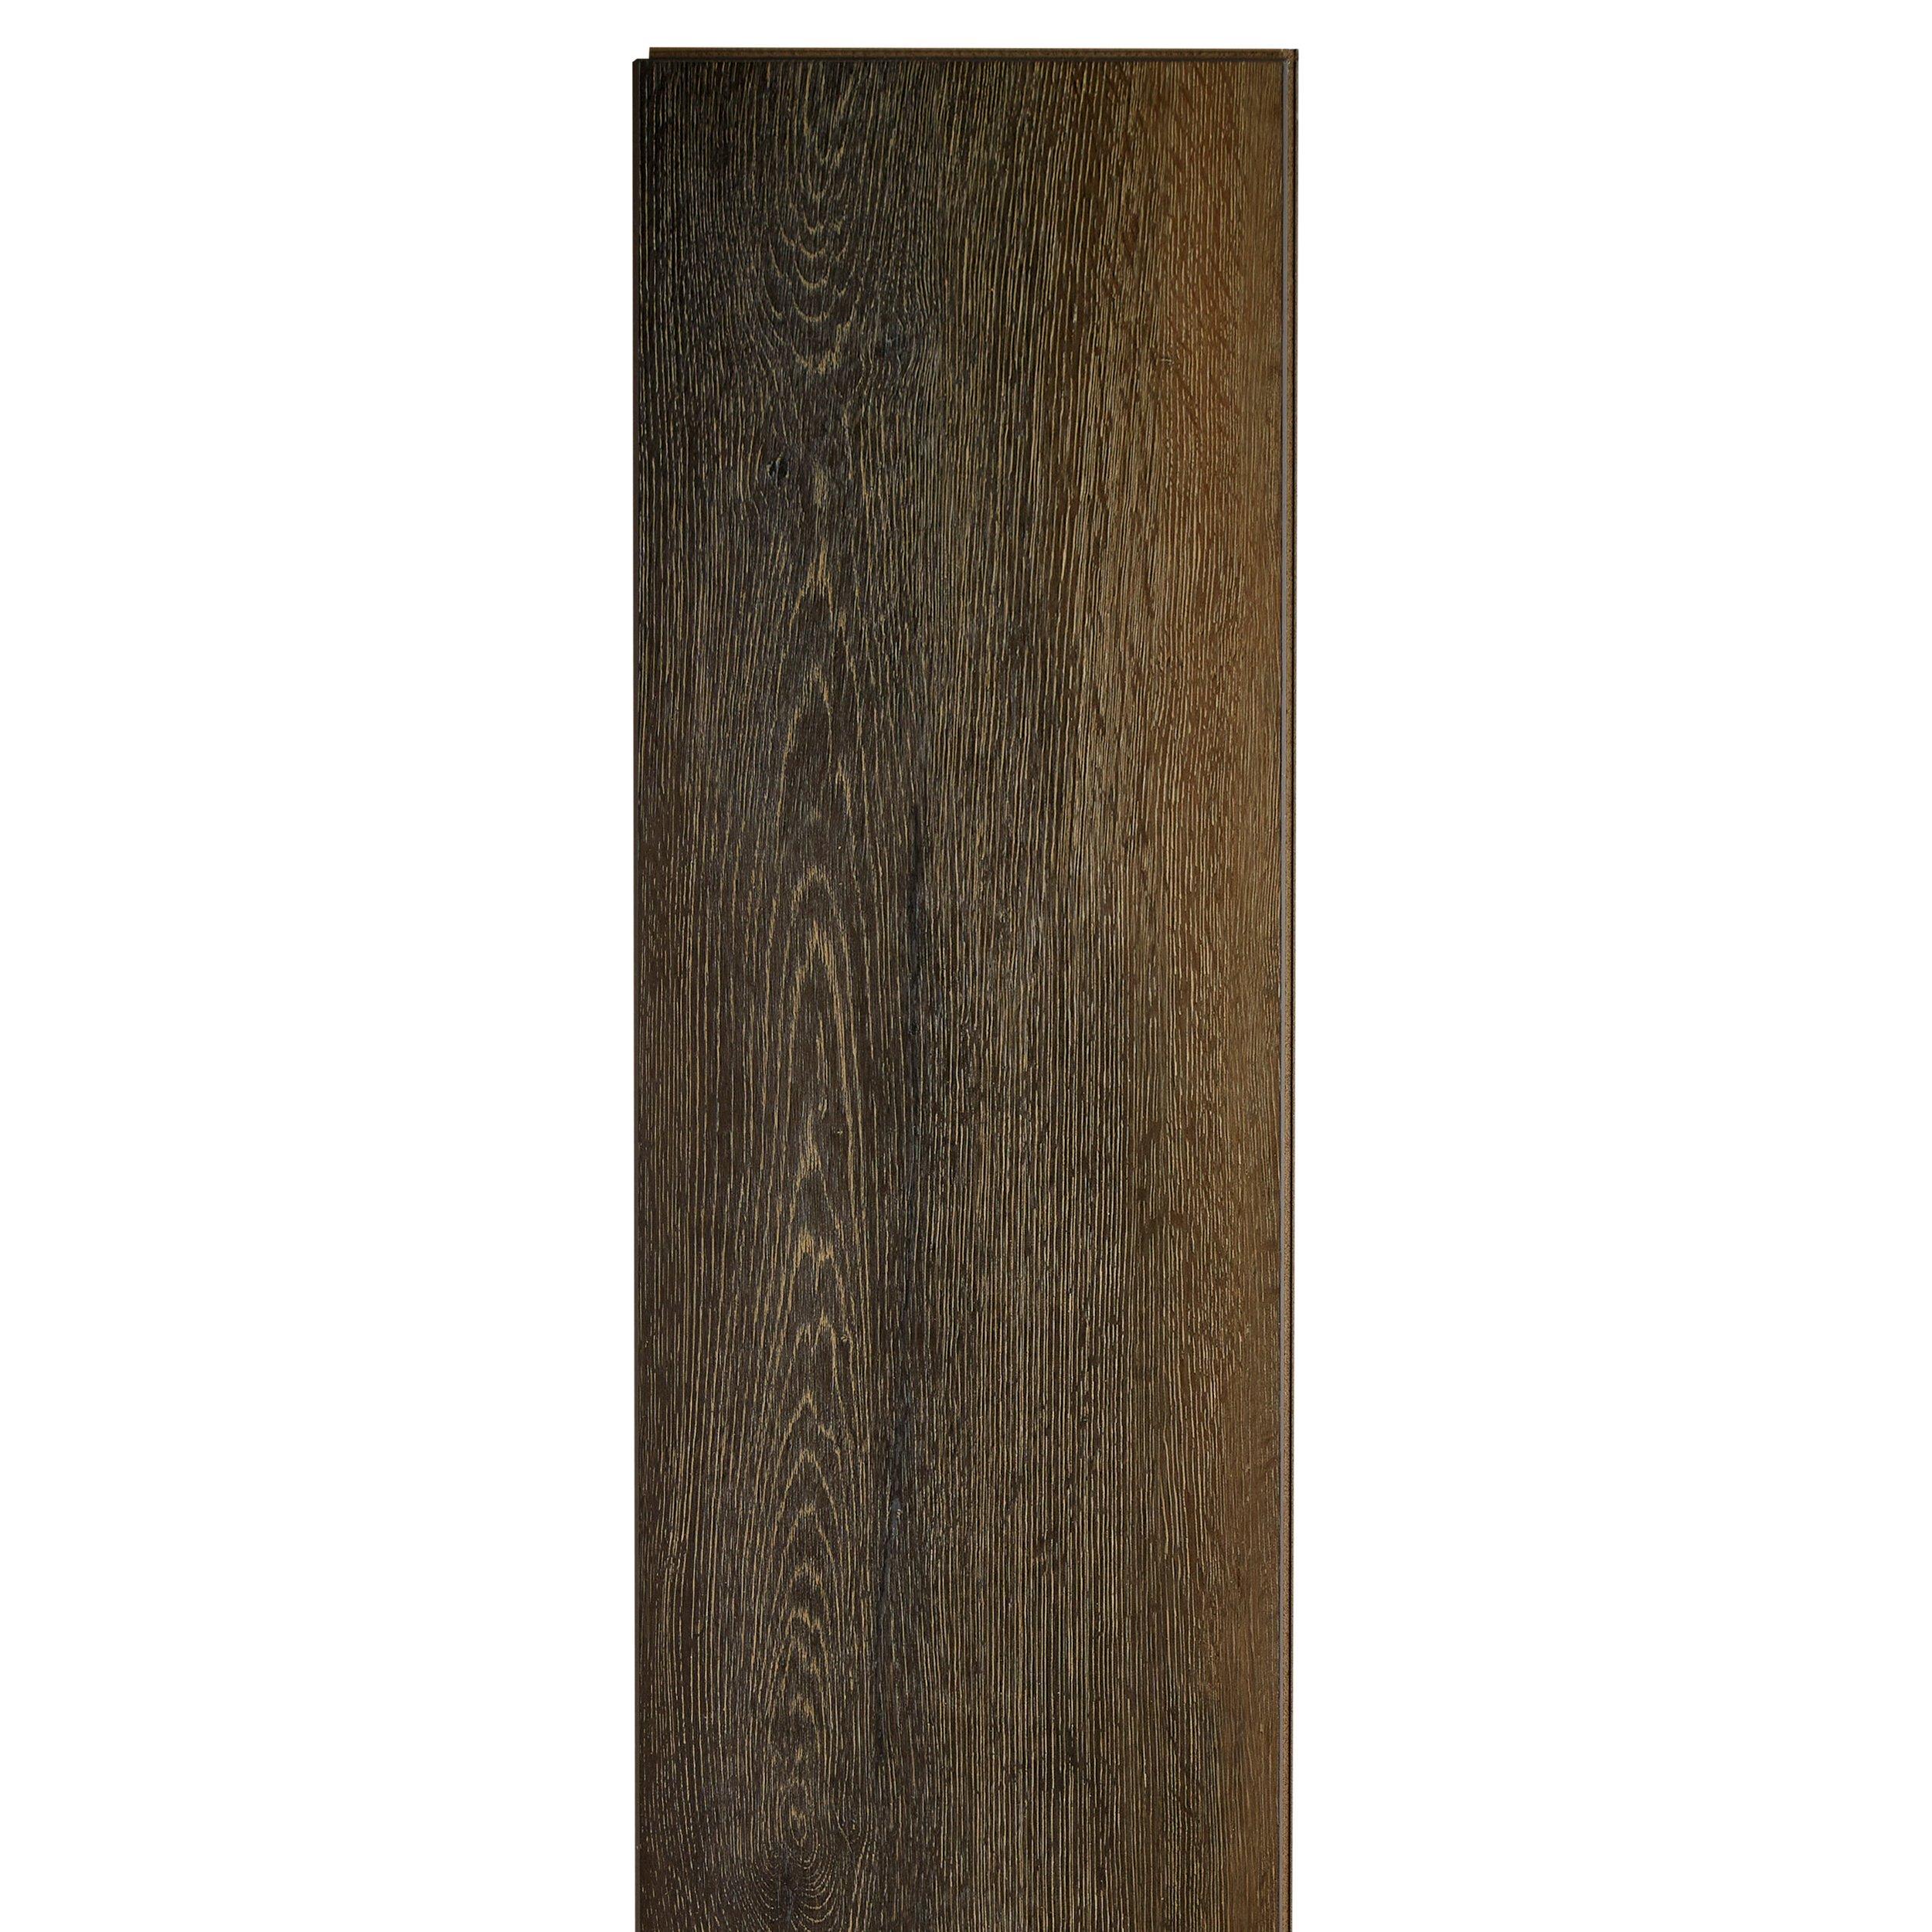 Royal Toffee Oak Rigid Core Luxury Vinyl Plank - Cork Back